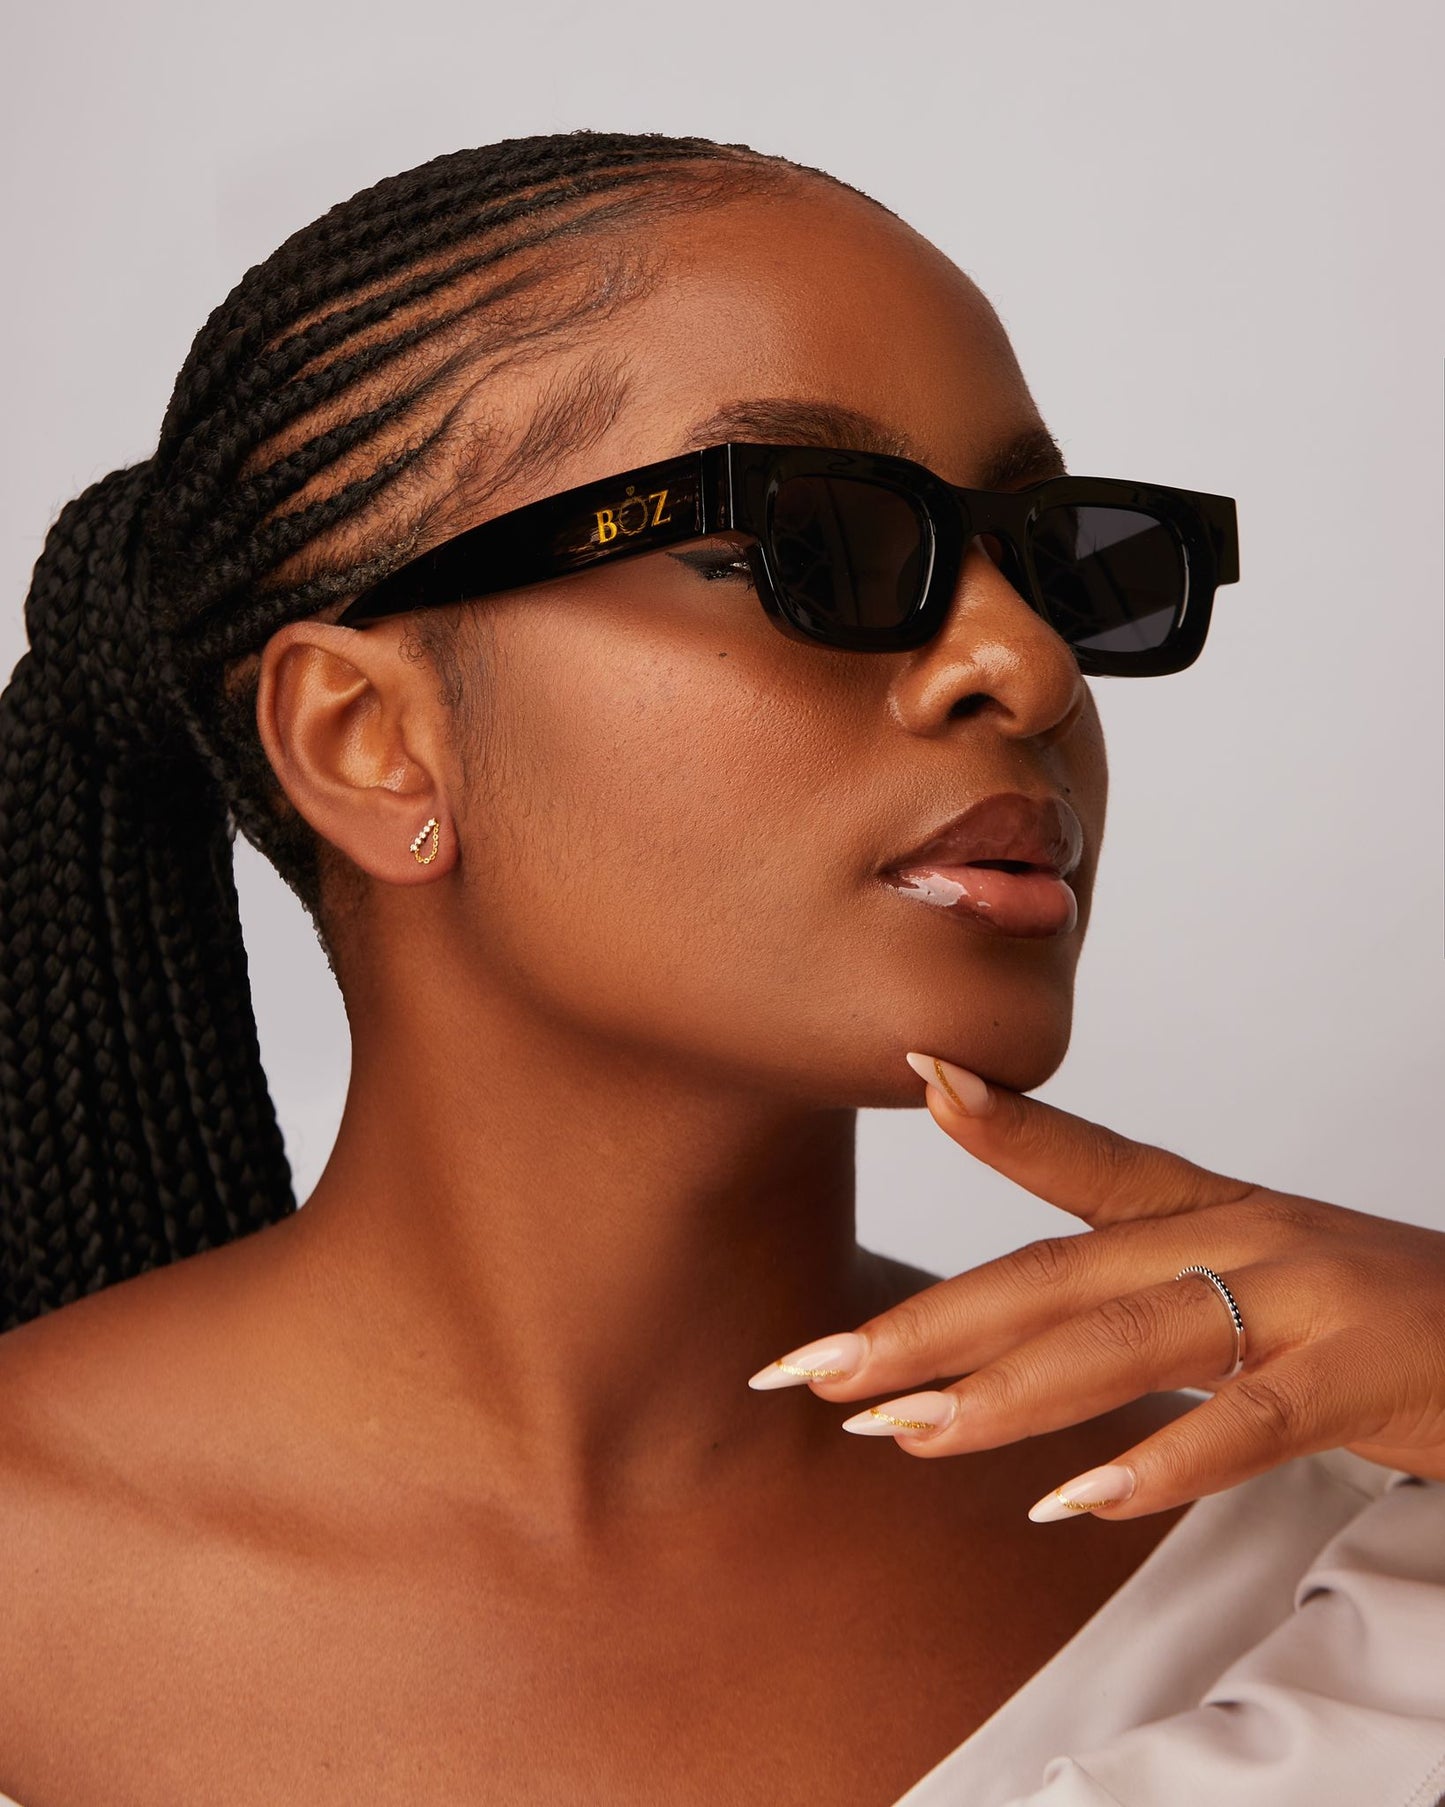 BOZ Visionary Sunglasses